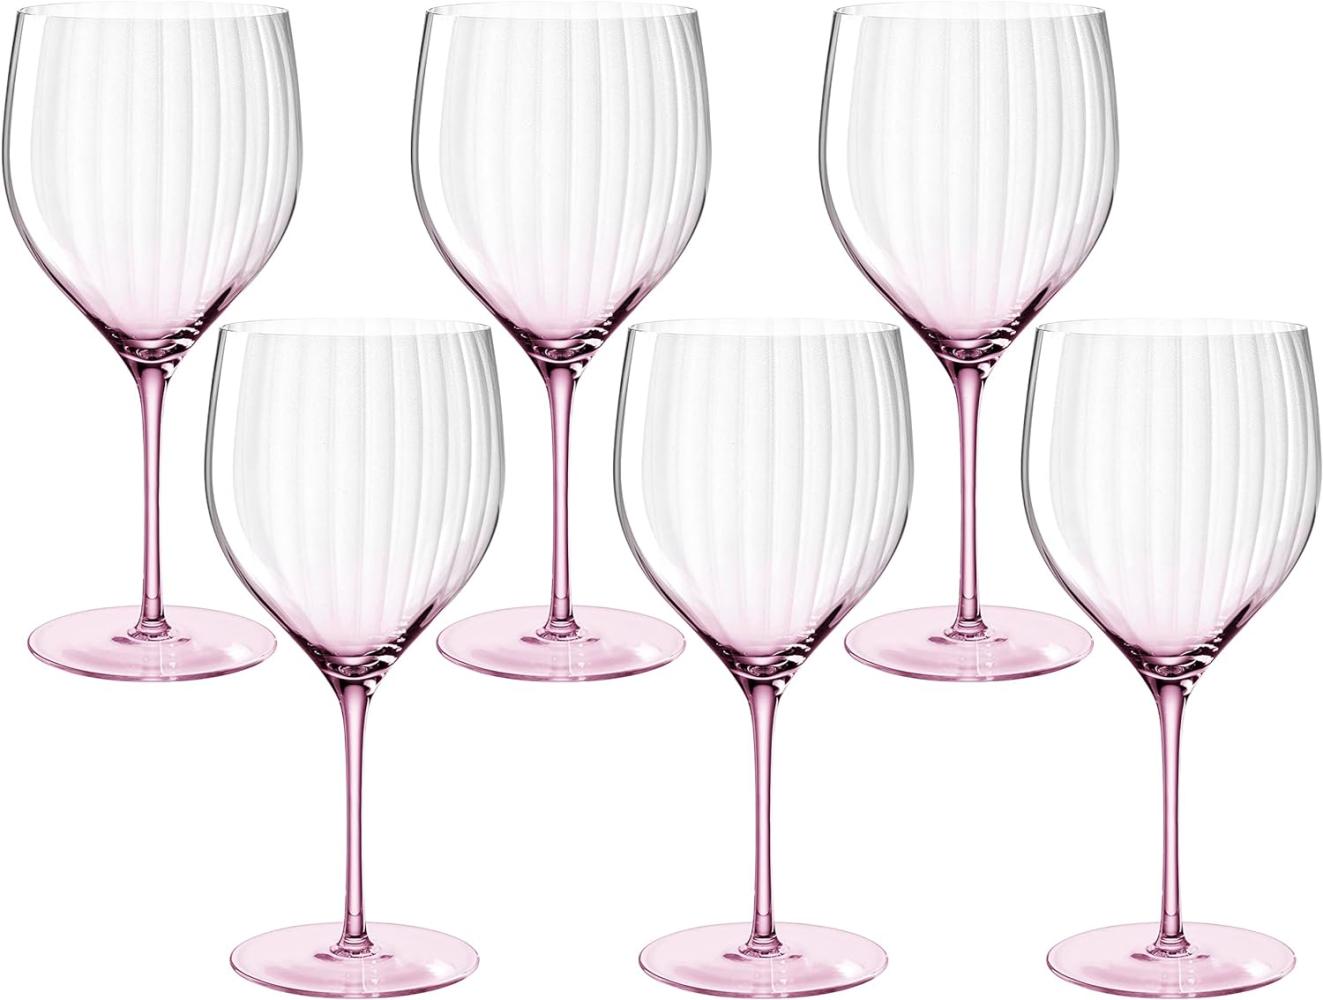 Leonardo Poesia Cocktailglas 6er Set, spülmaschinengeeignete Getränkegläser für Mixgetränke, Höhe 23 cm, 750 ml, rosé, 022378 Bild 1